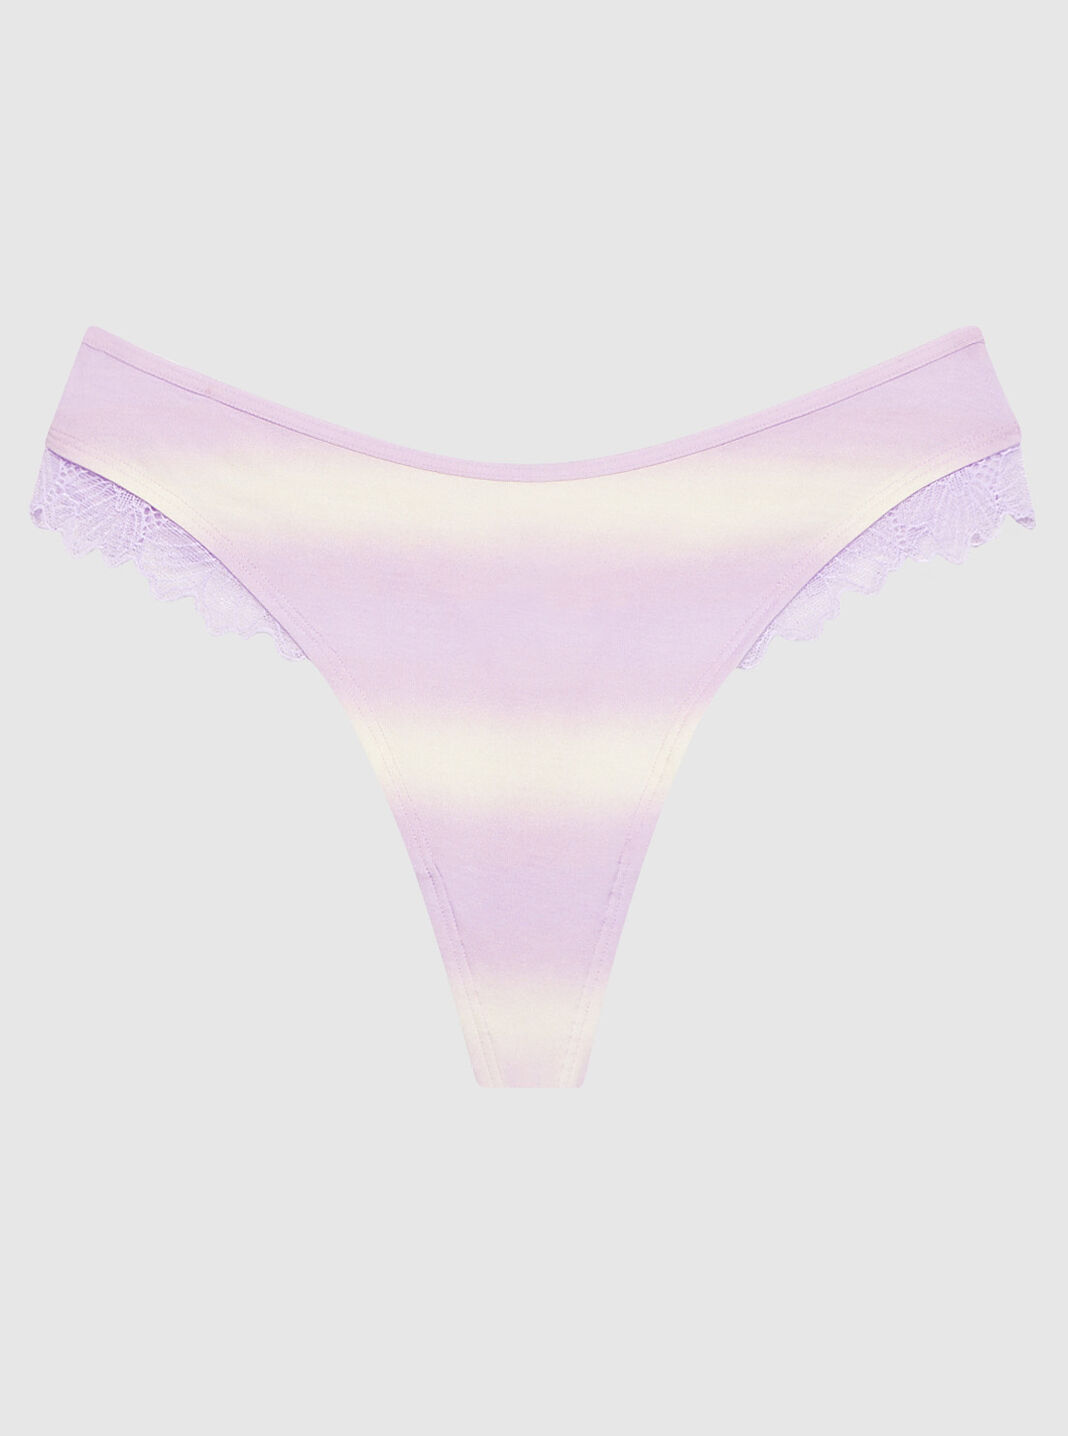 La Senza on X: calling all screamers 👻 👻 panties NOW 7/$29.95 online &  in stores.  #panties #halloween #sexytricks   / X